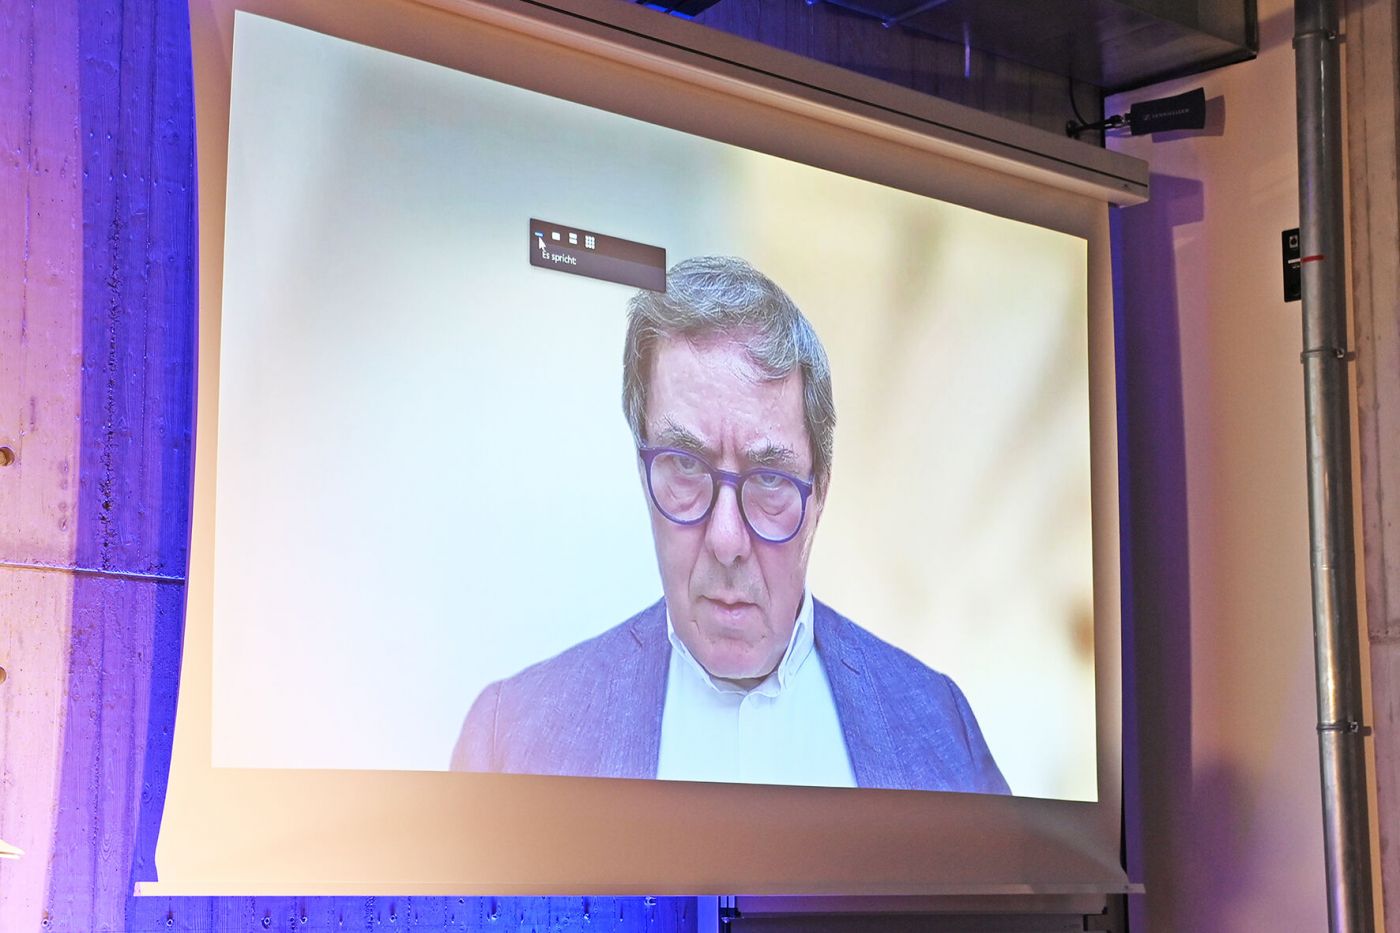 Videobild von Prof. Dr. Mathias Uhl, projiziert auf eine Leinwand